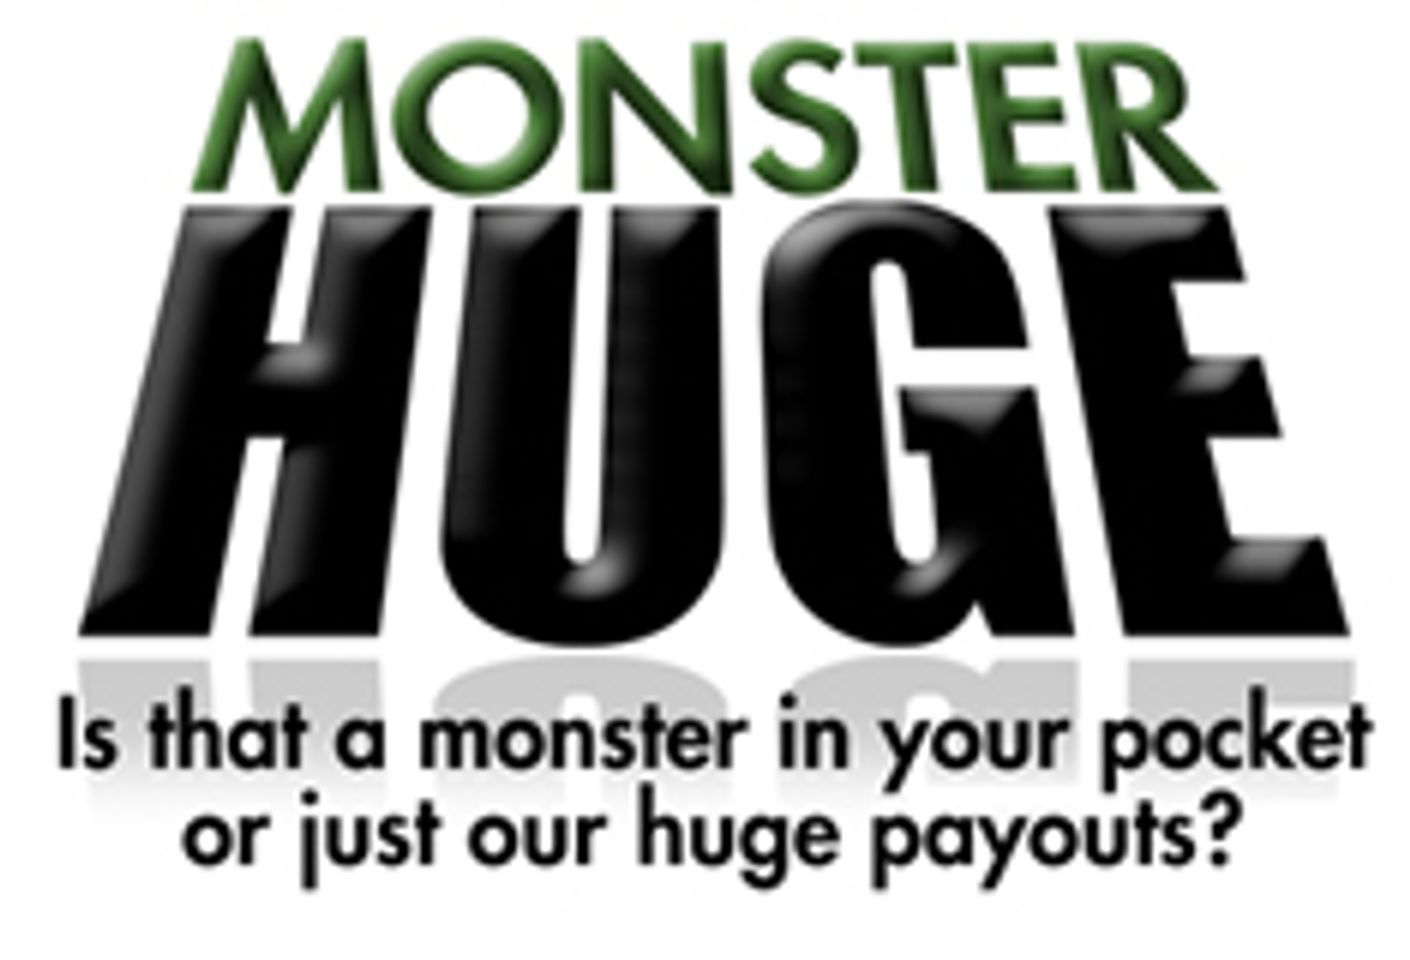 Business Profile | Internet | MonsterHuge.com